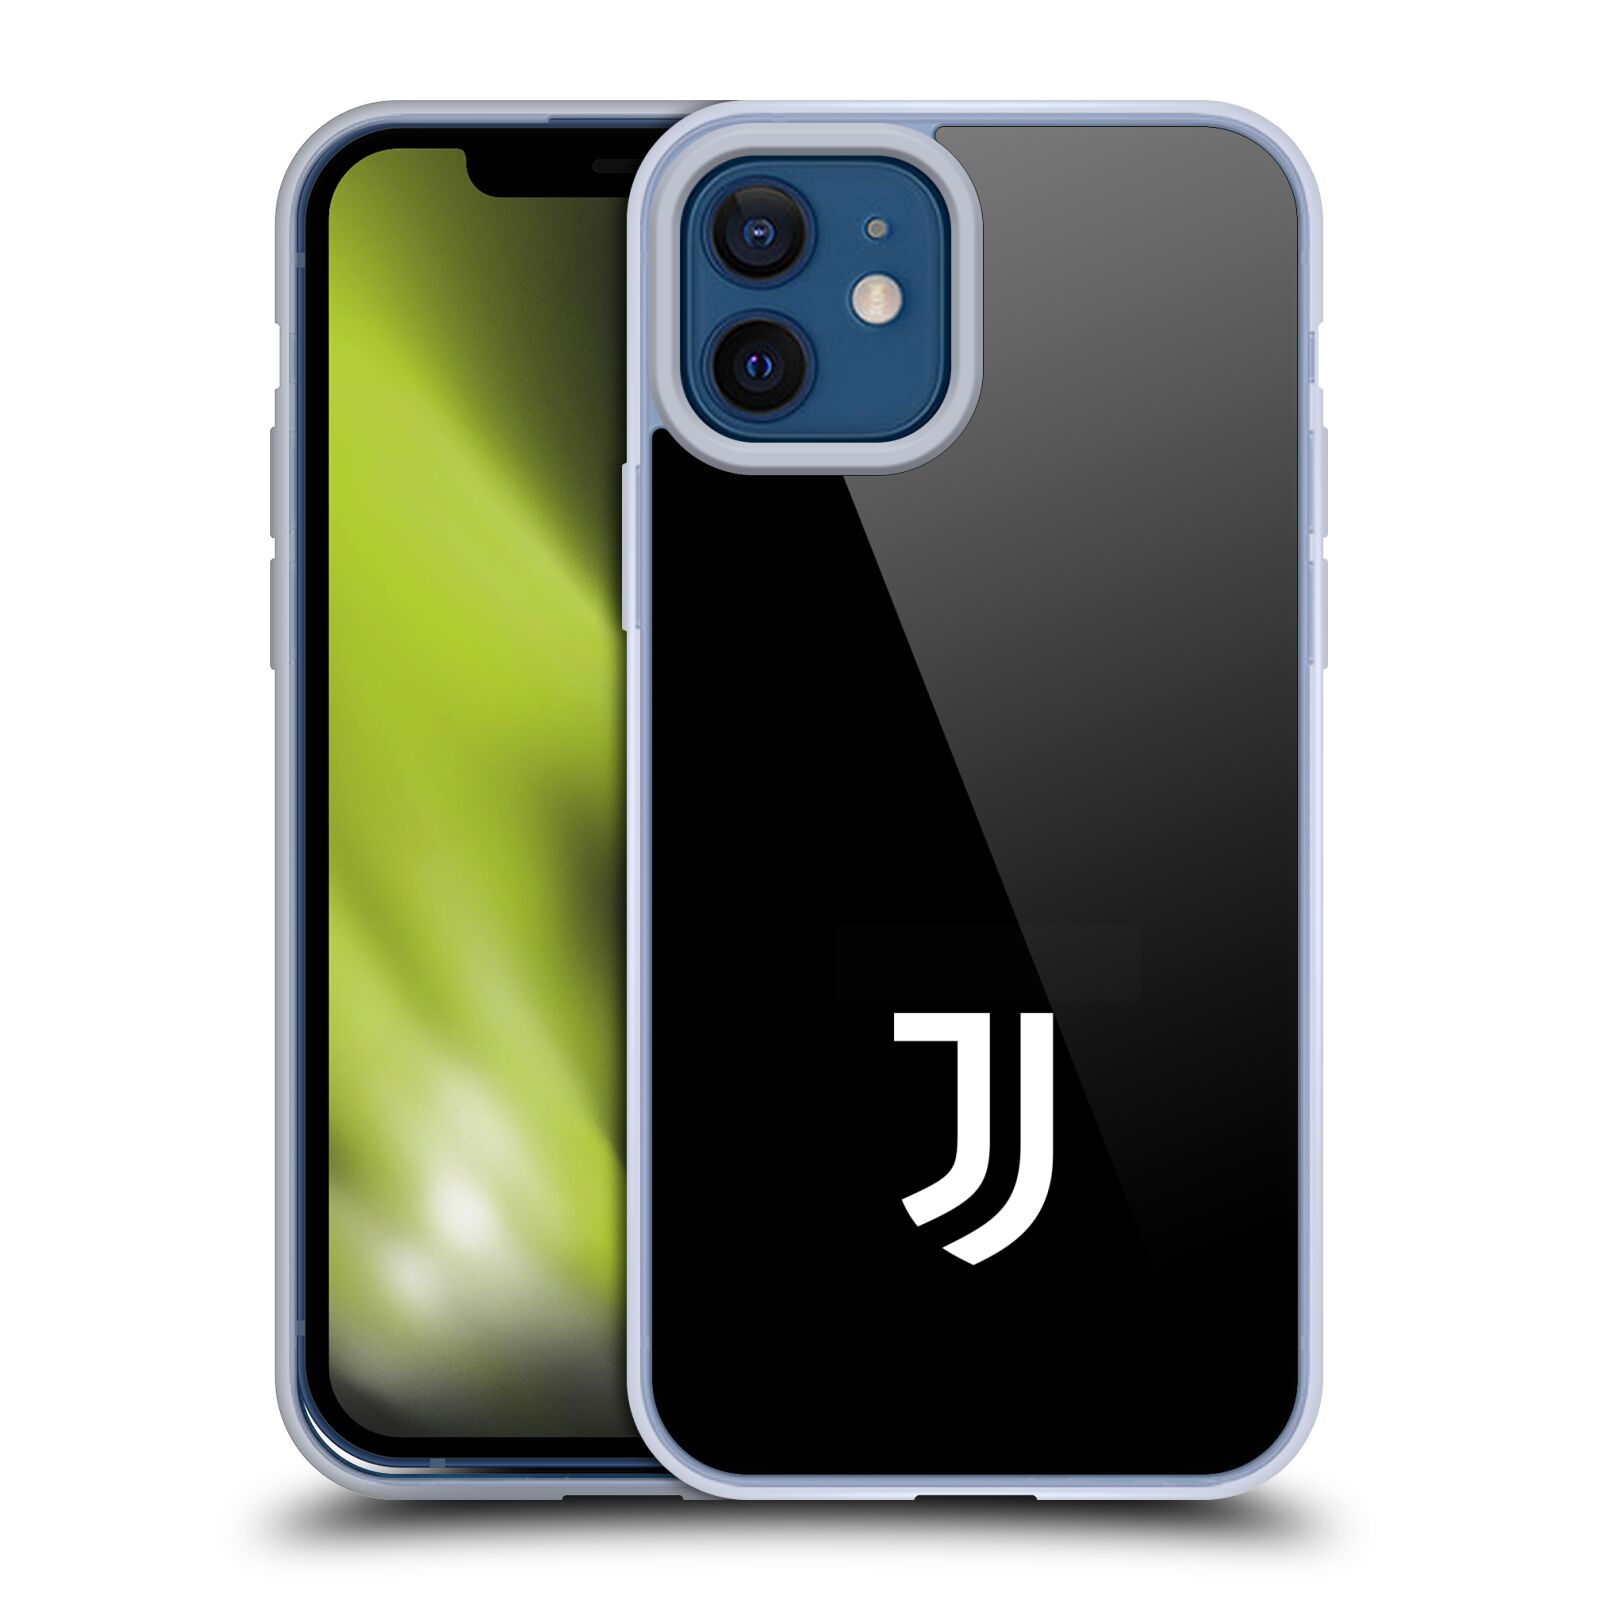 Head Case Designs Ufficiale Juventus Football Club Fuori Casa 2020/21 Kit Abbinato Cover in Morbido Gel Compatibile con Apple iPhone 7 Plus/iPhone 8 Plus